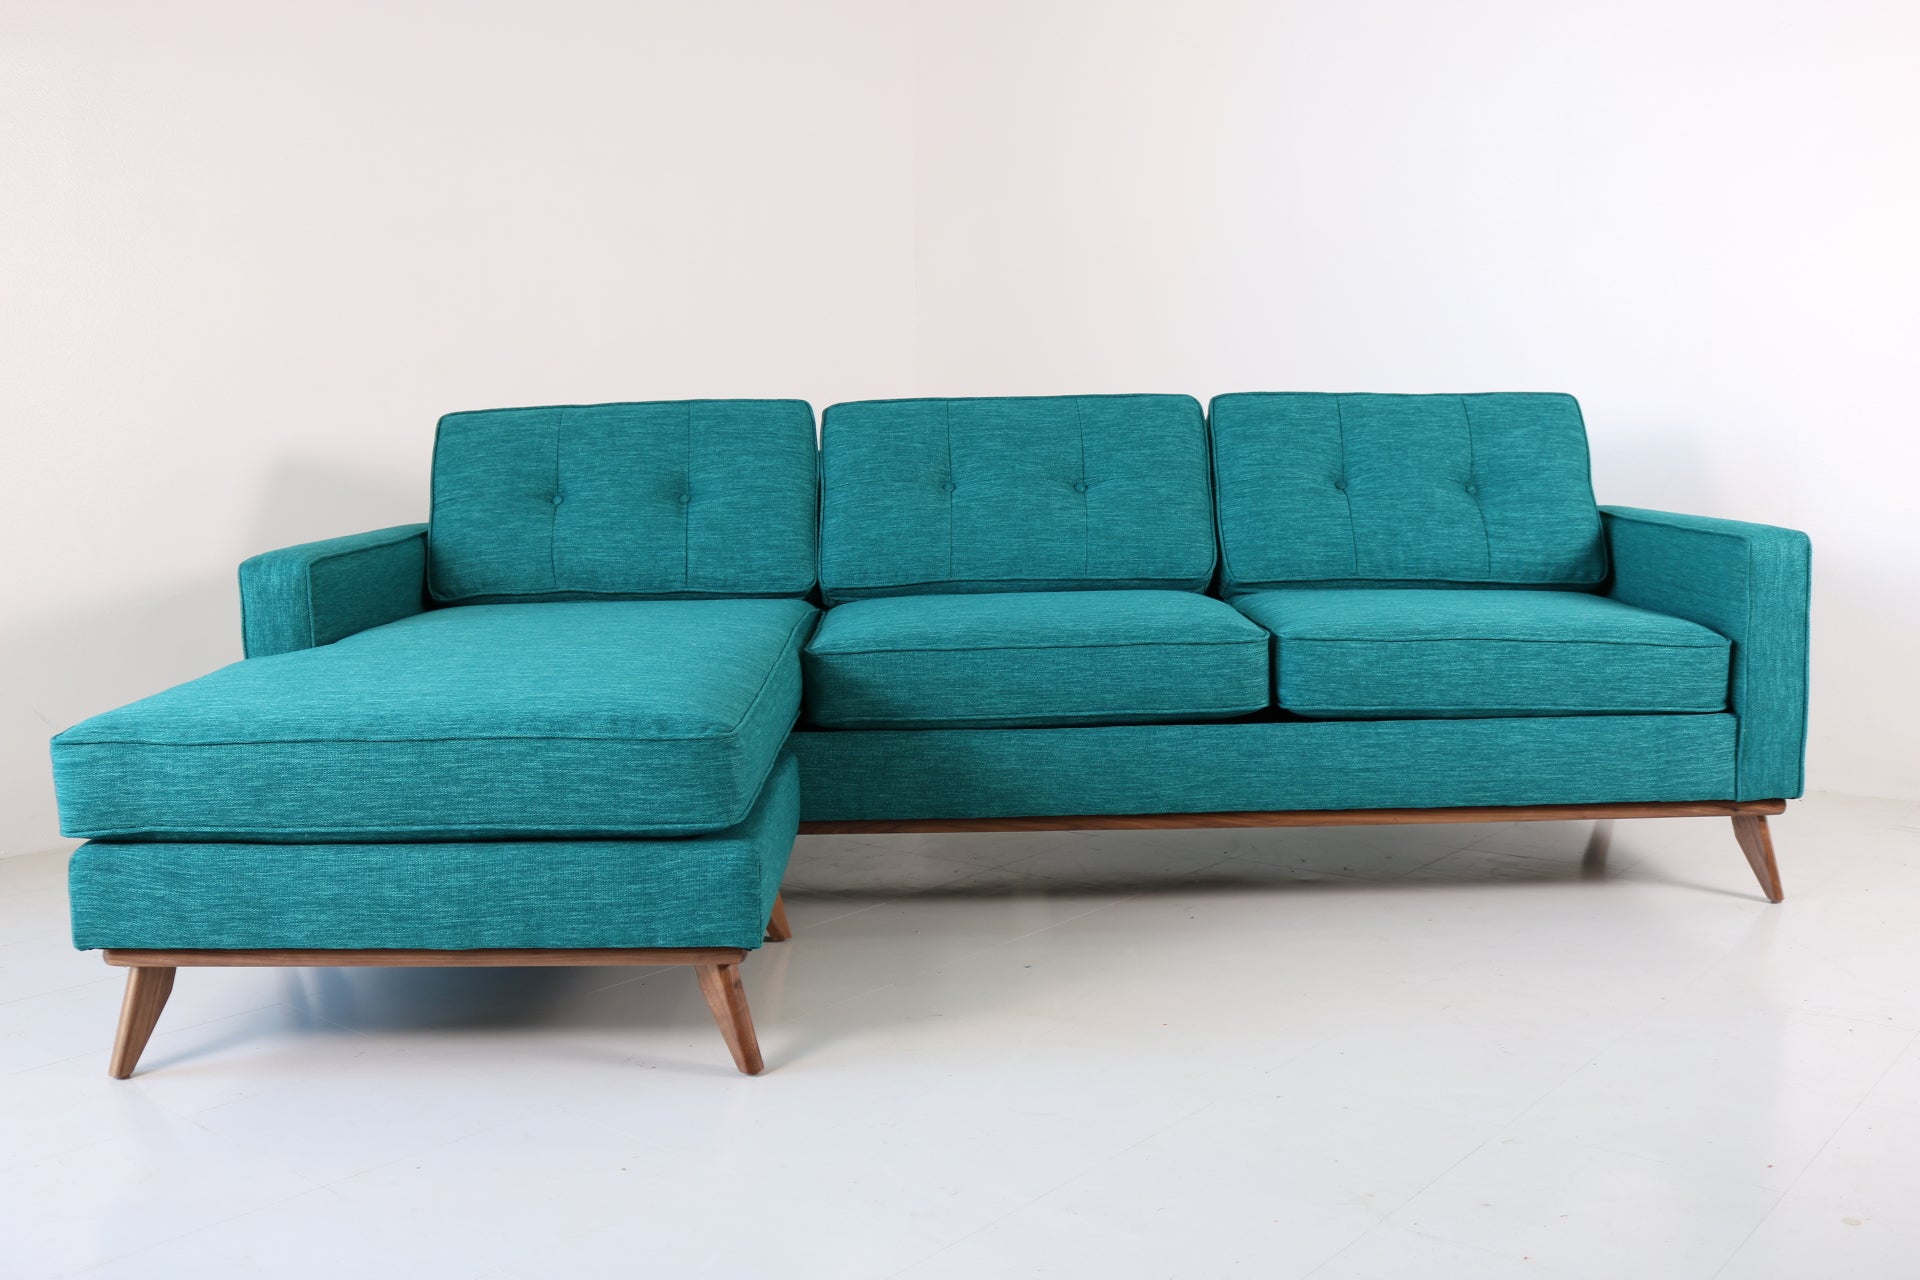 Custom "Sully" Sofa Chaise